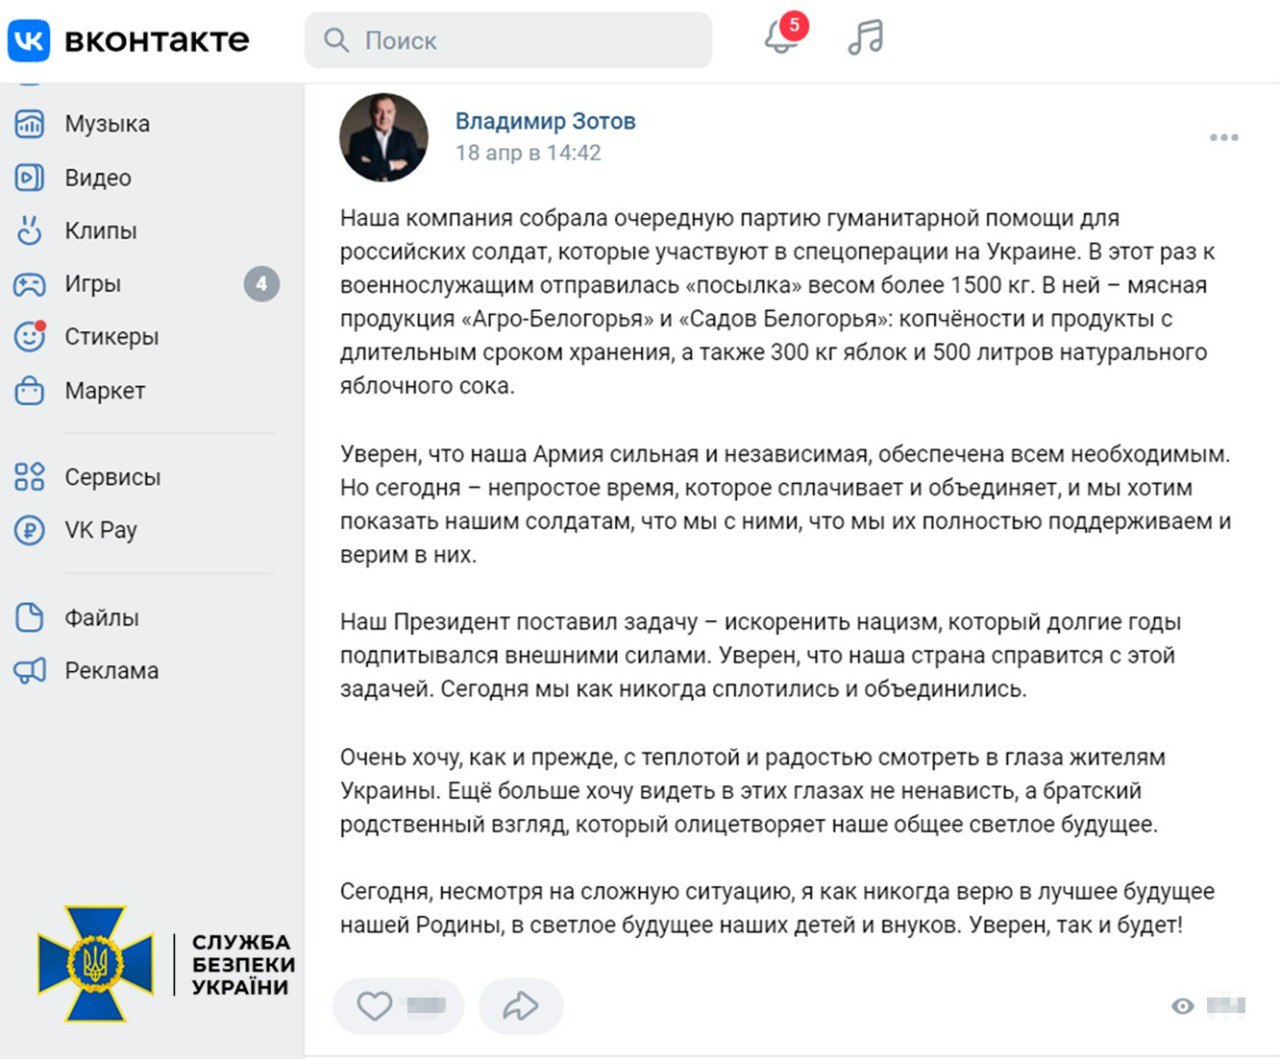 СБУ арештувала активи російського депутата в Україні на понад 180 млн грн